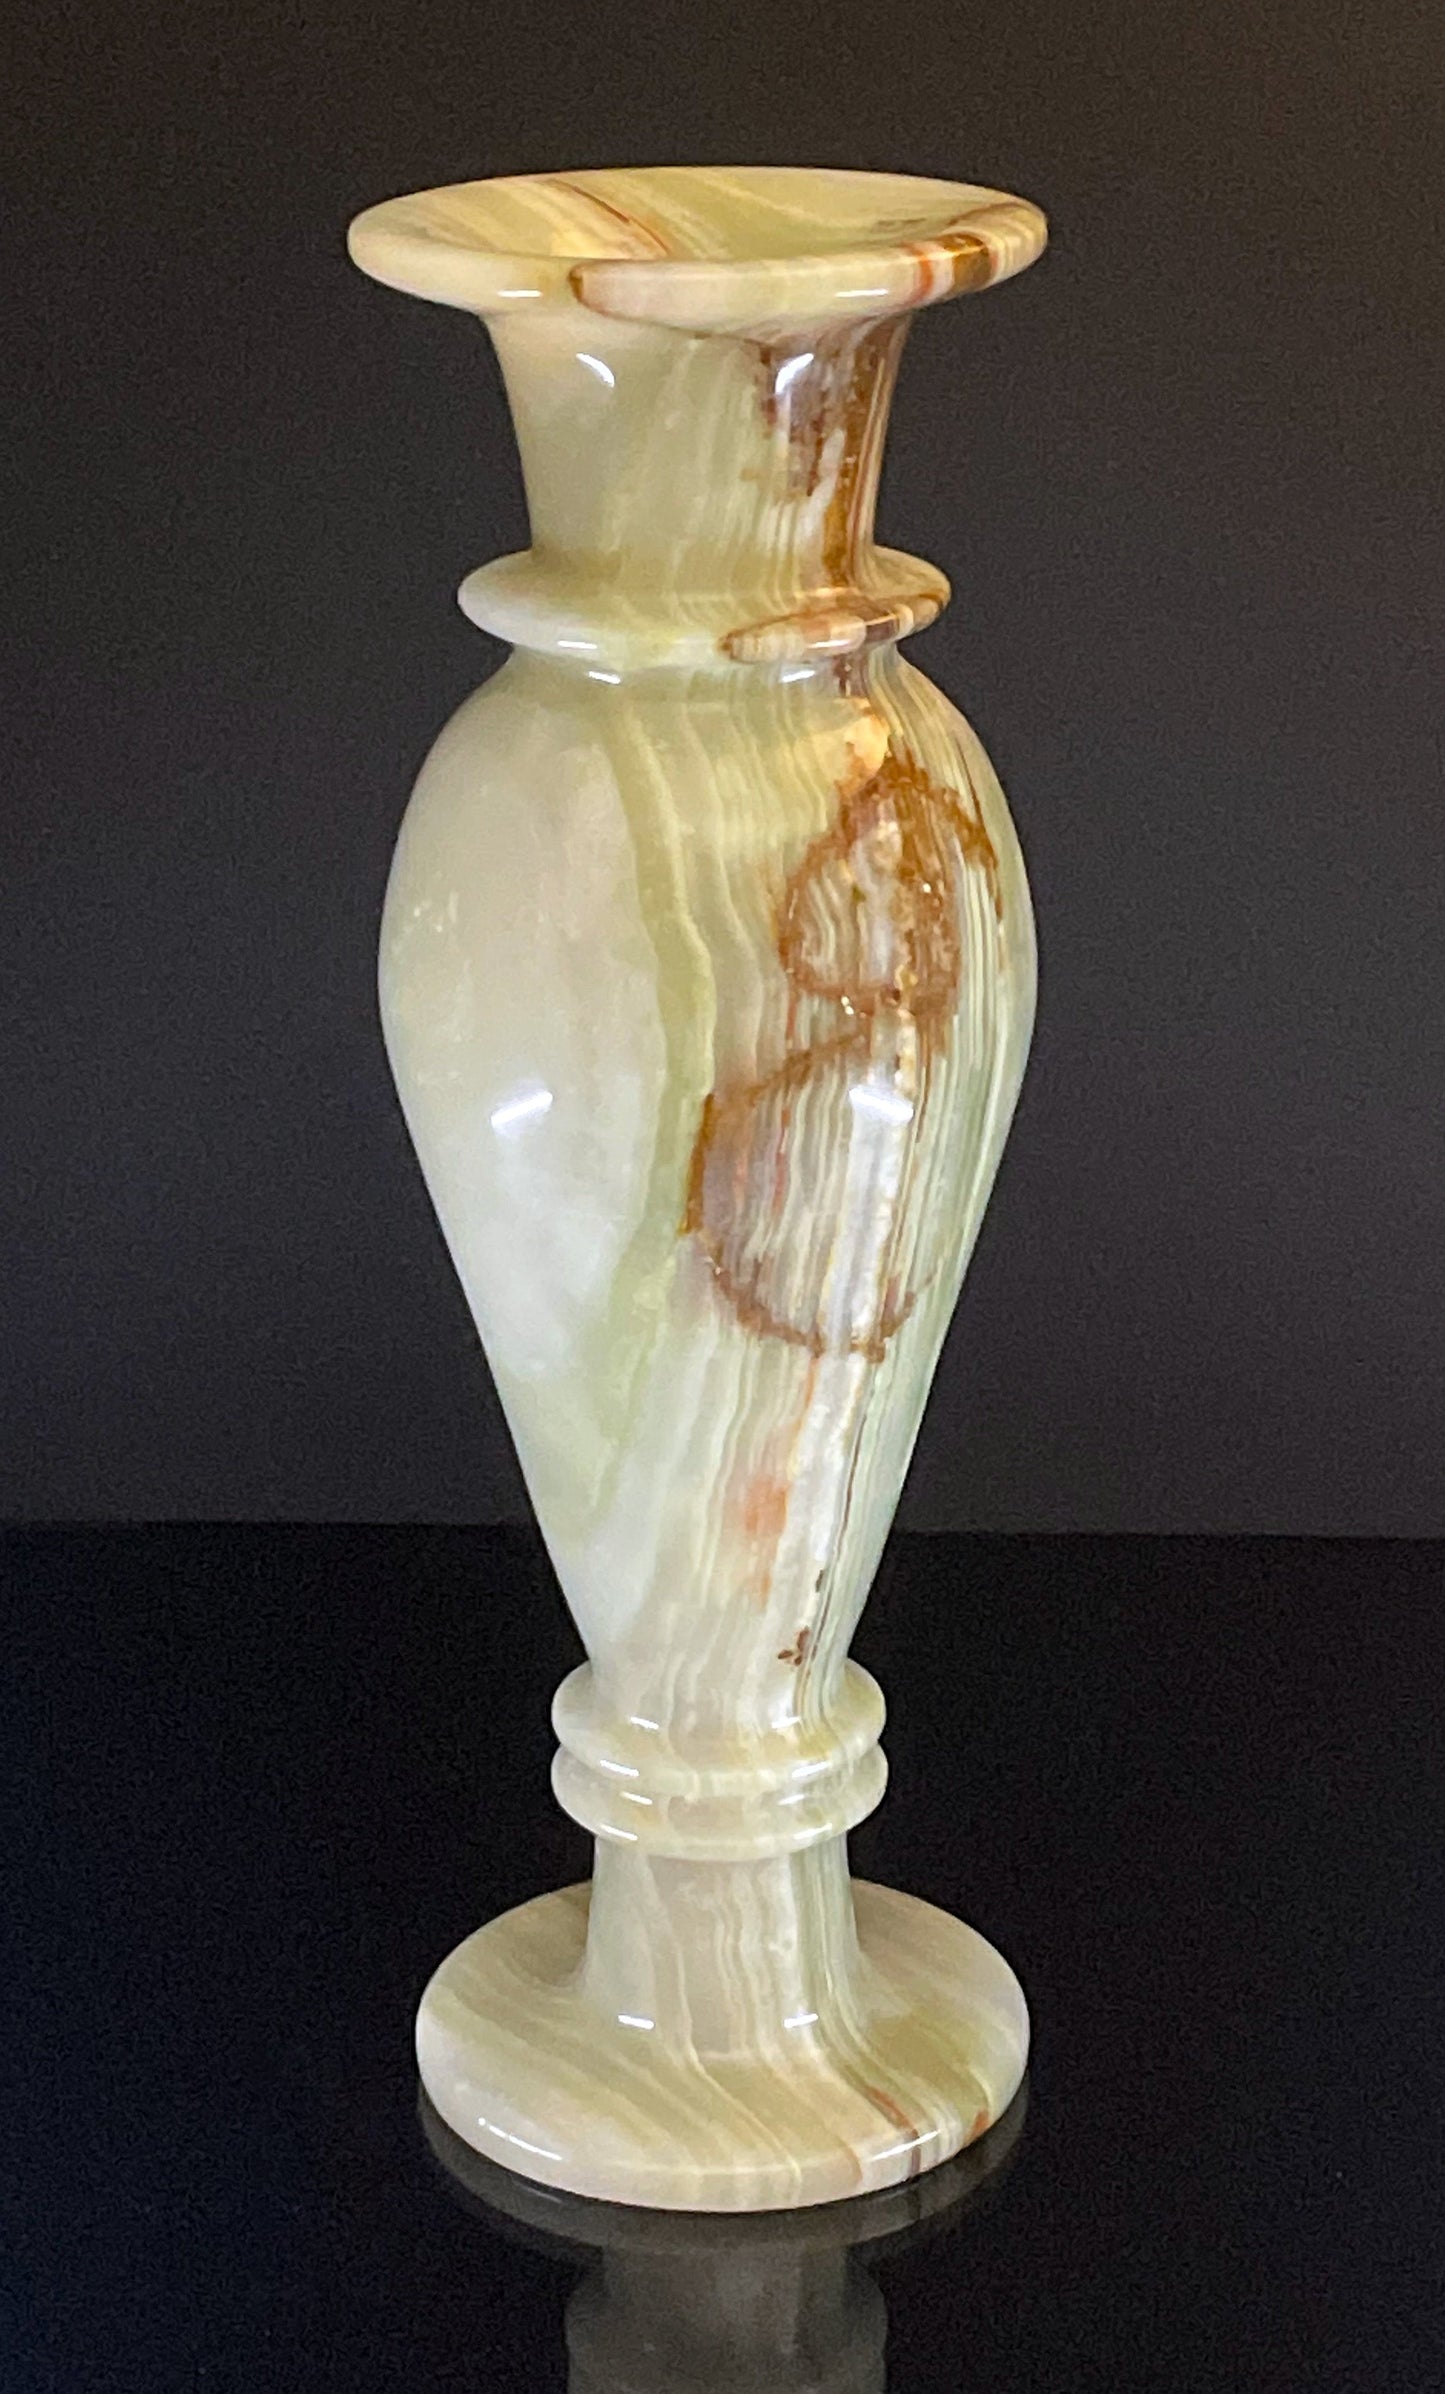 Large Banded Onyx Vase // 4.97 Lb.